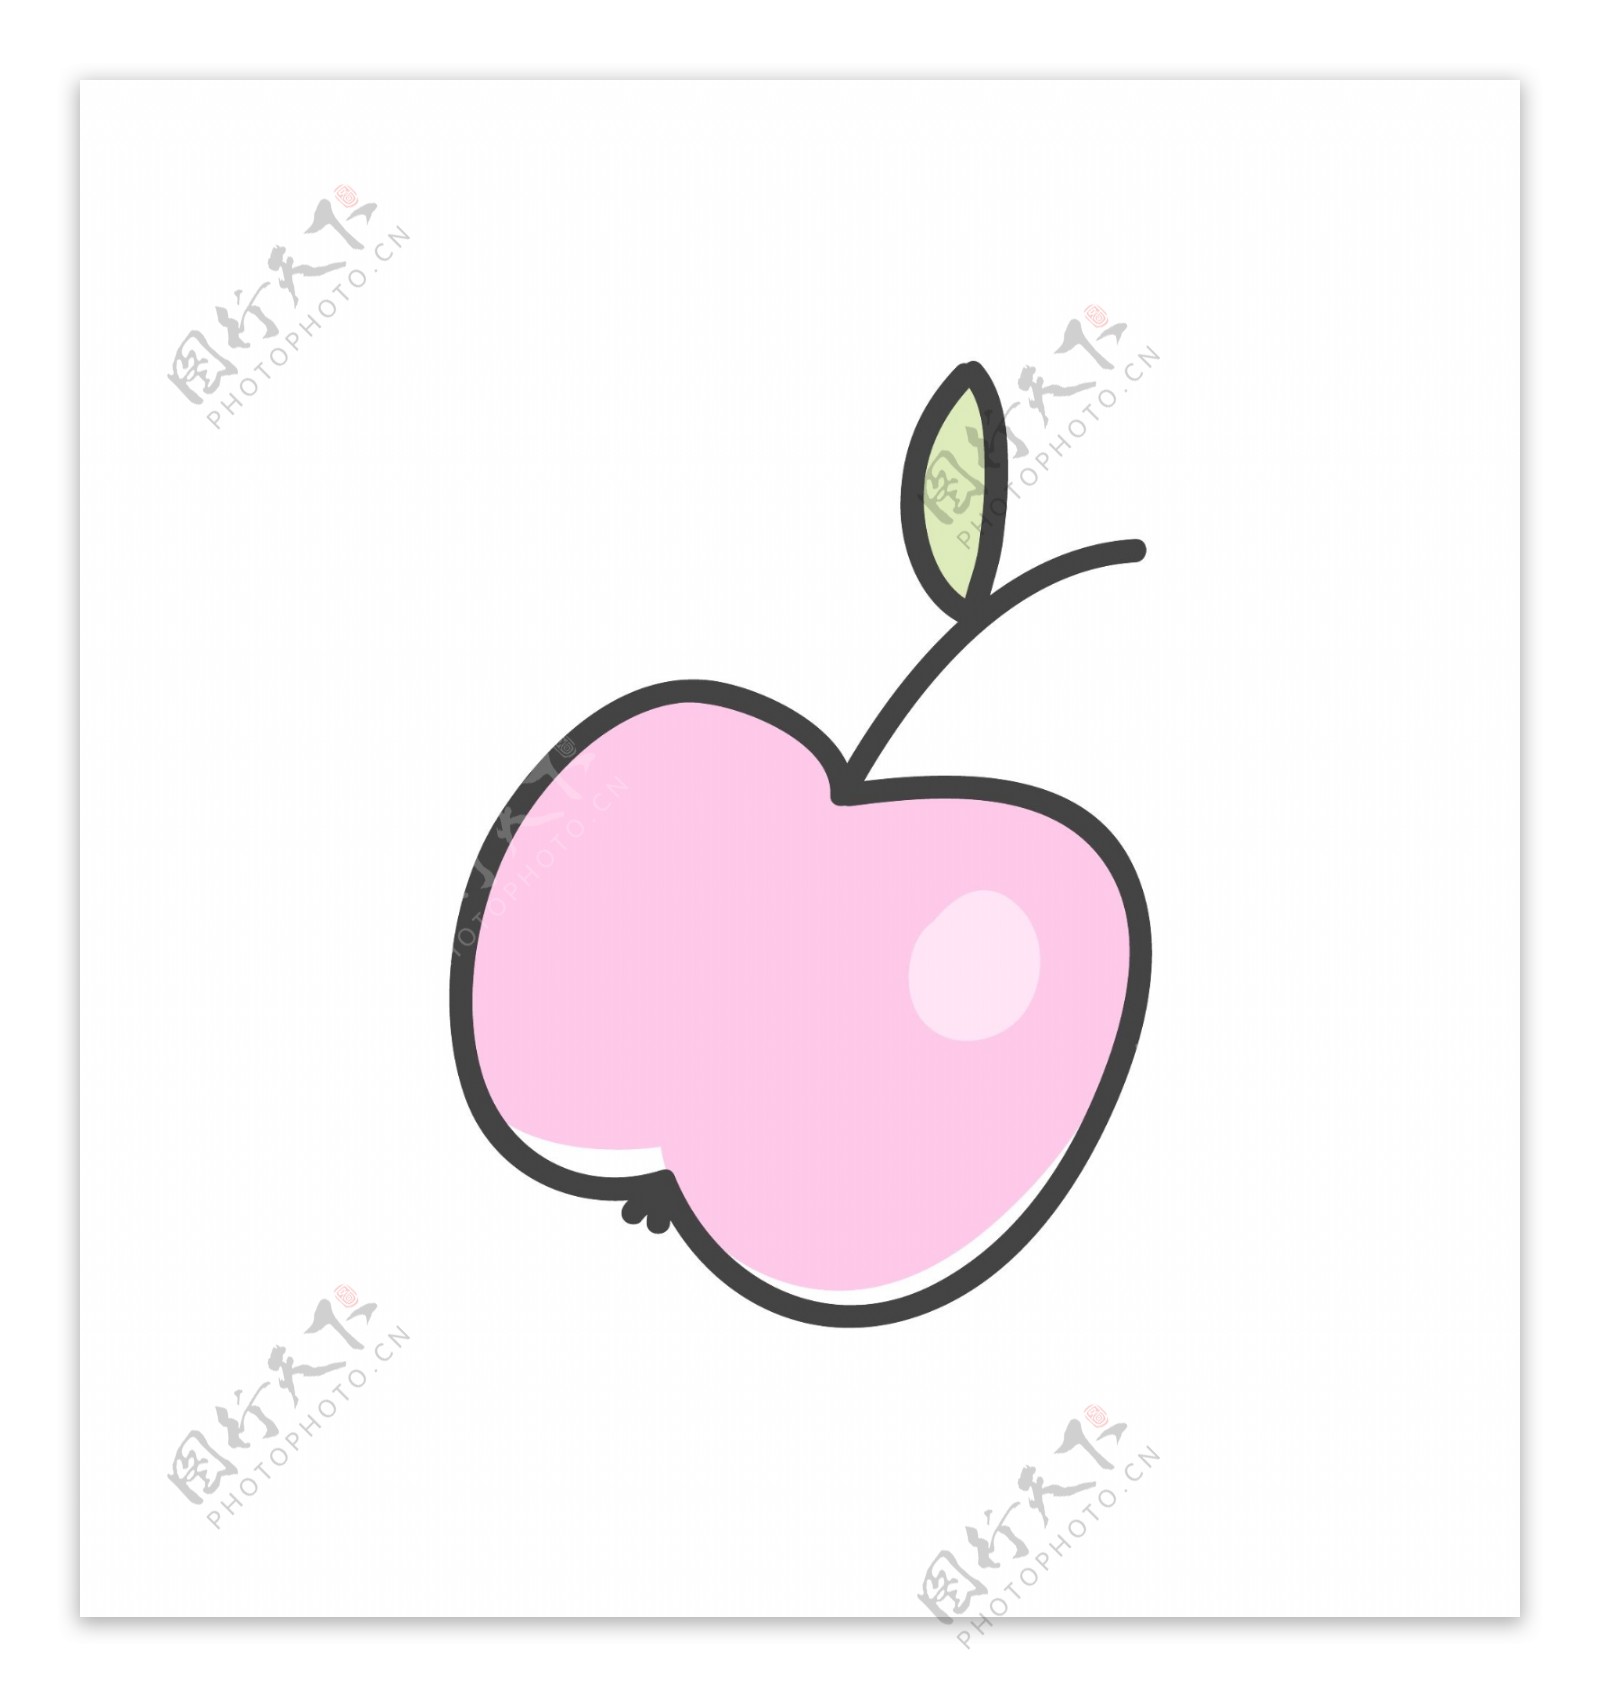 手绘一个粉红色苹果矢量素材